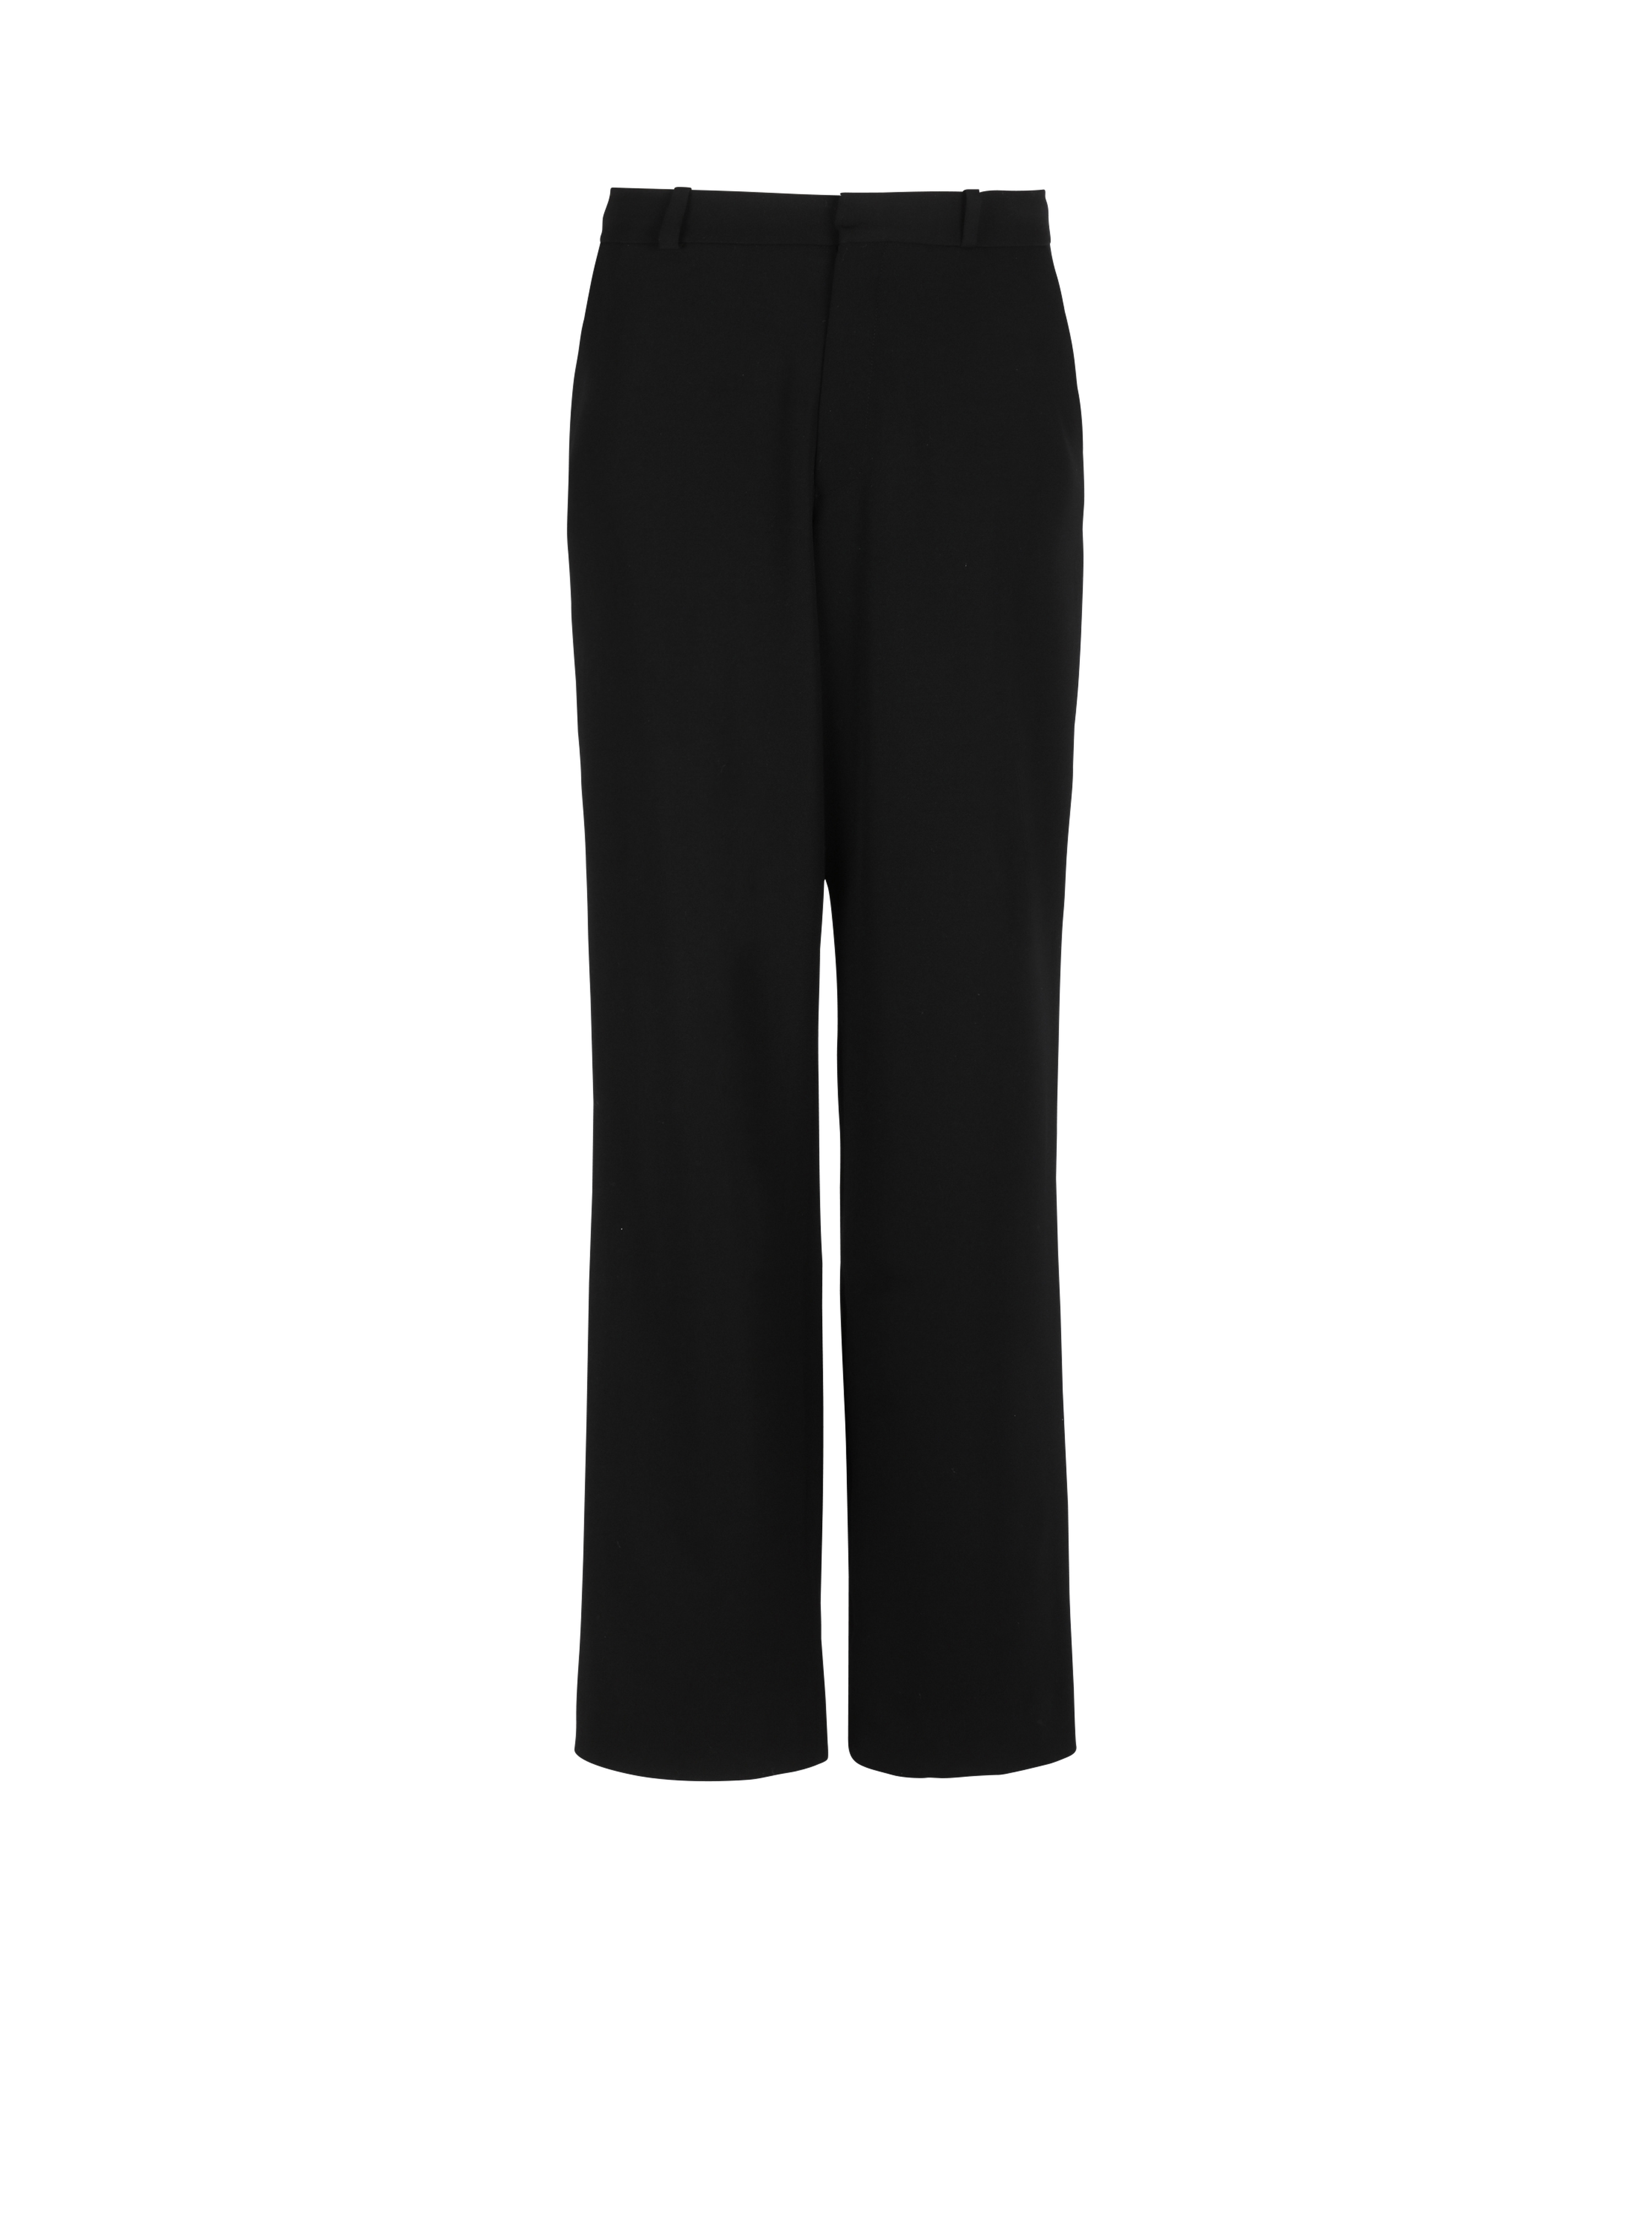 Wide-leg wool trousers, black